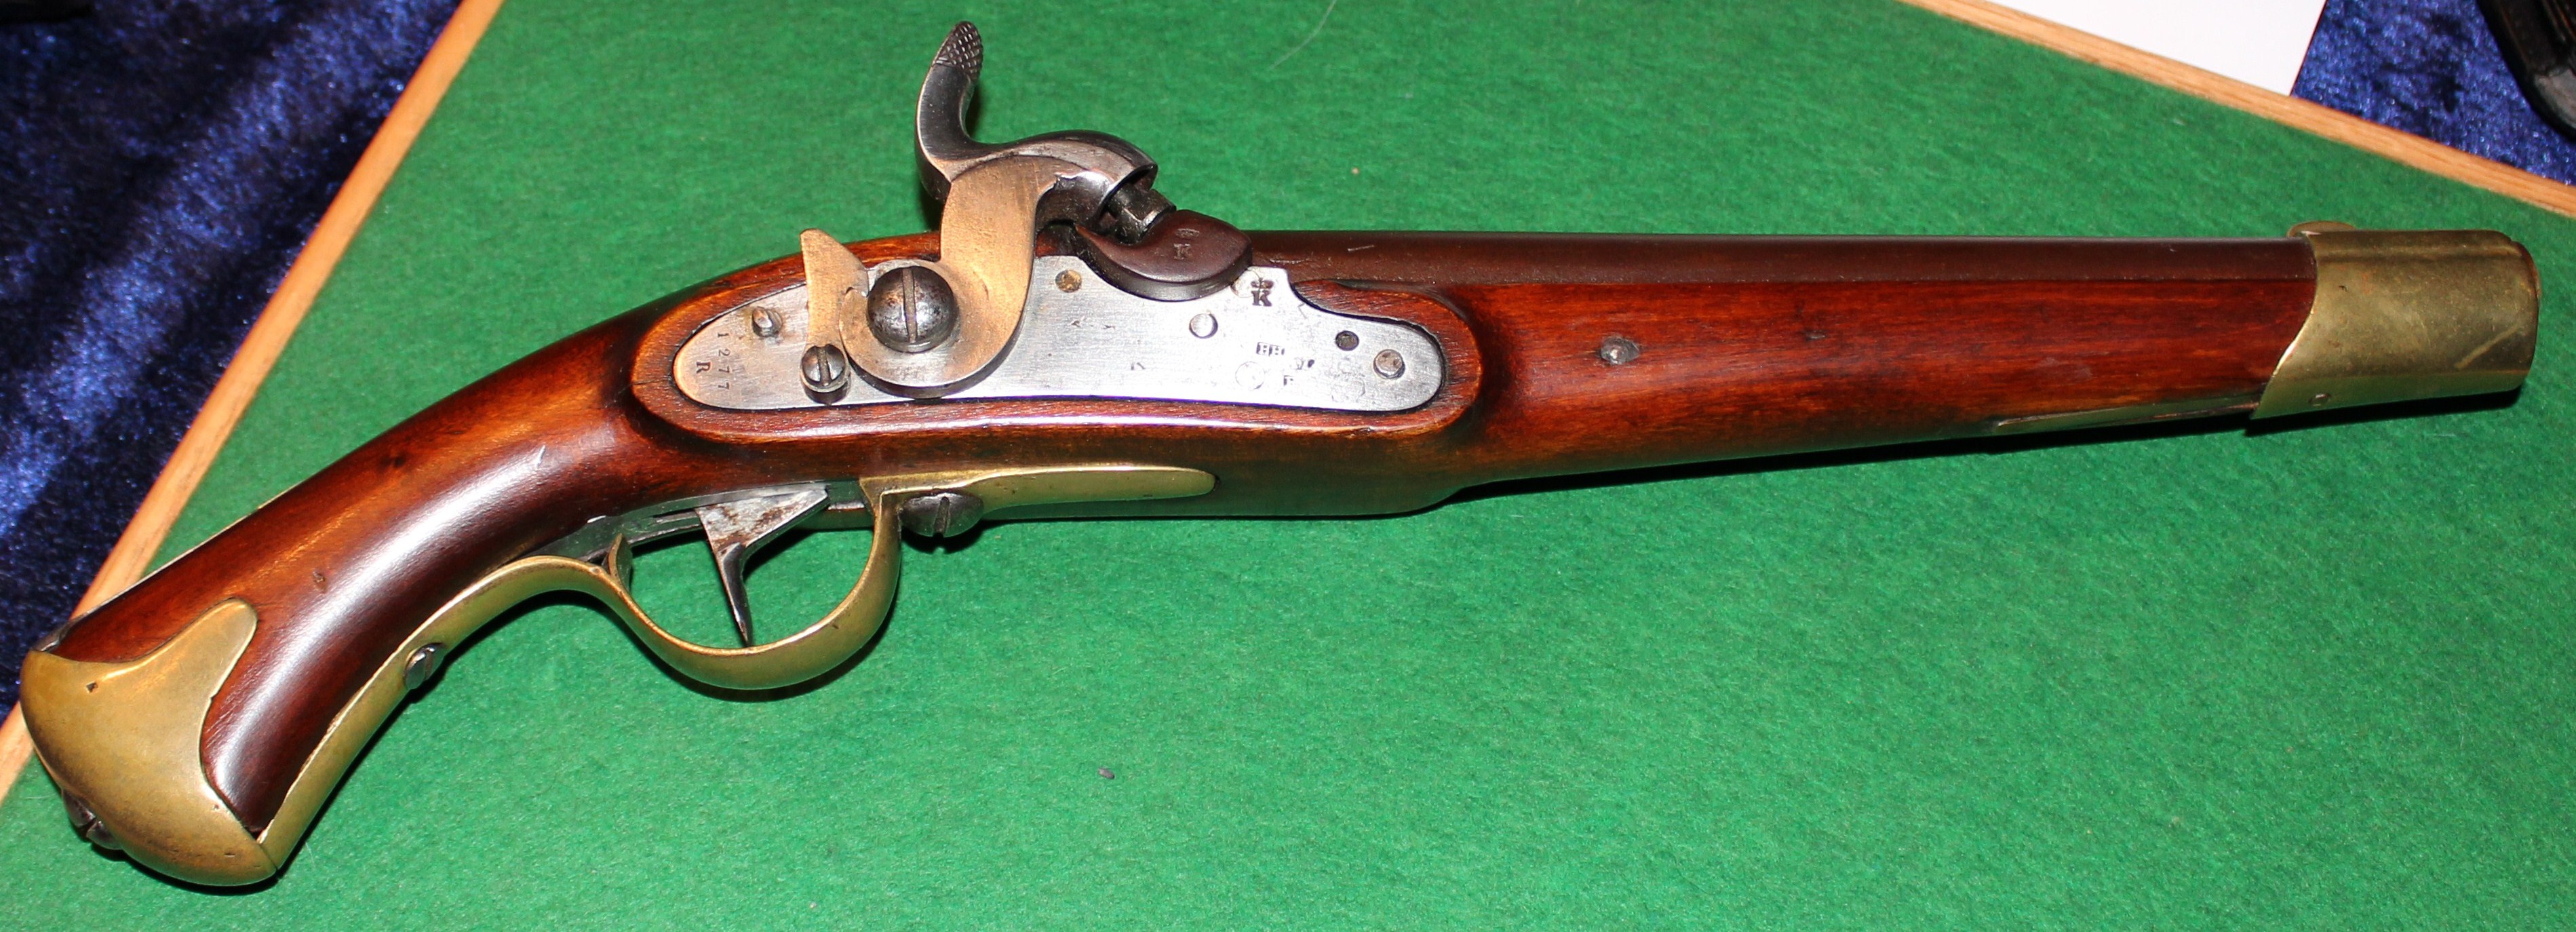 ./guns/pistol/bilder/Pistol-Kongsberg-M1834-46-1300-1.jpg